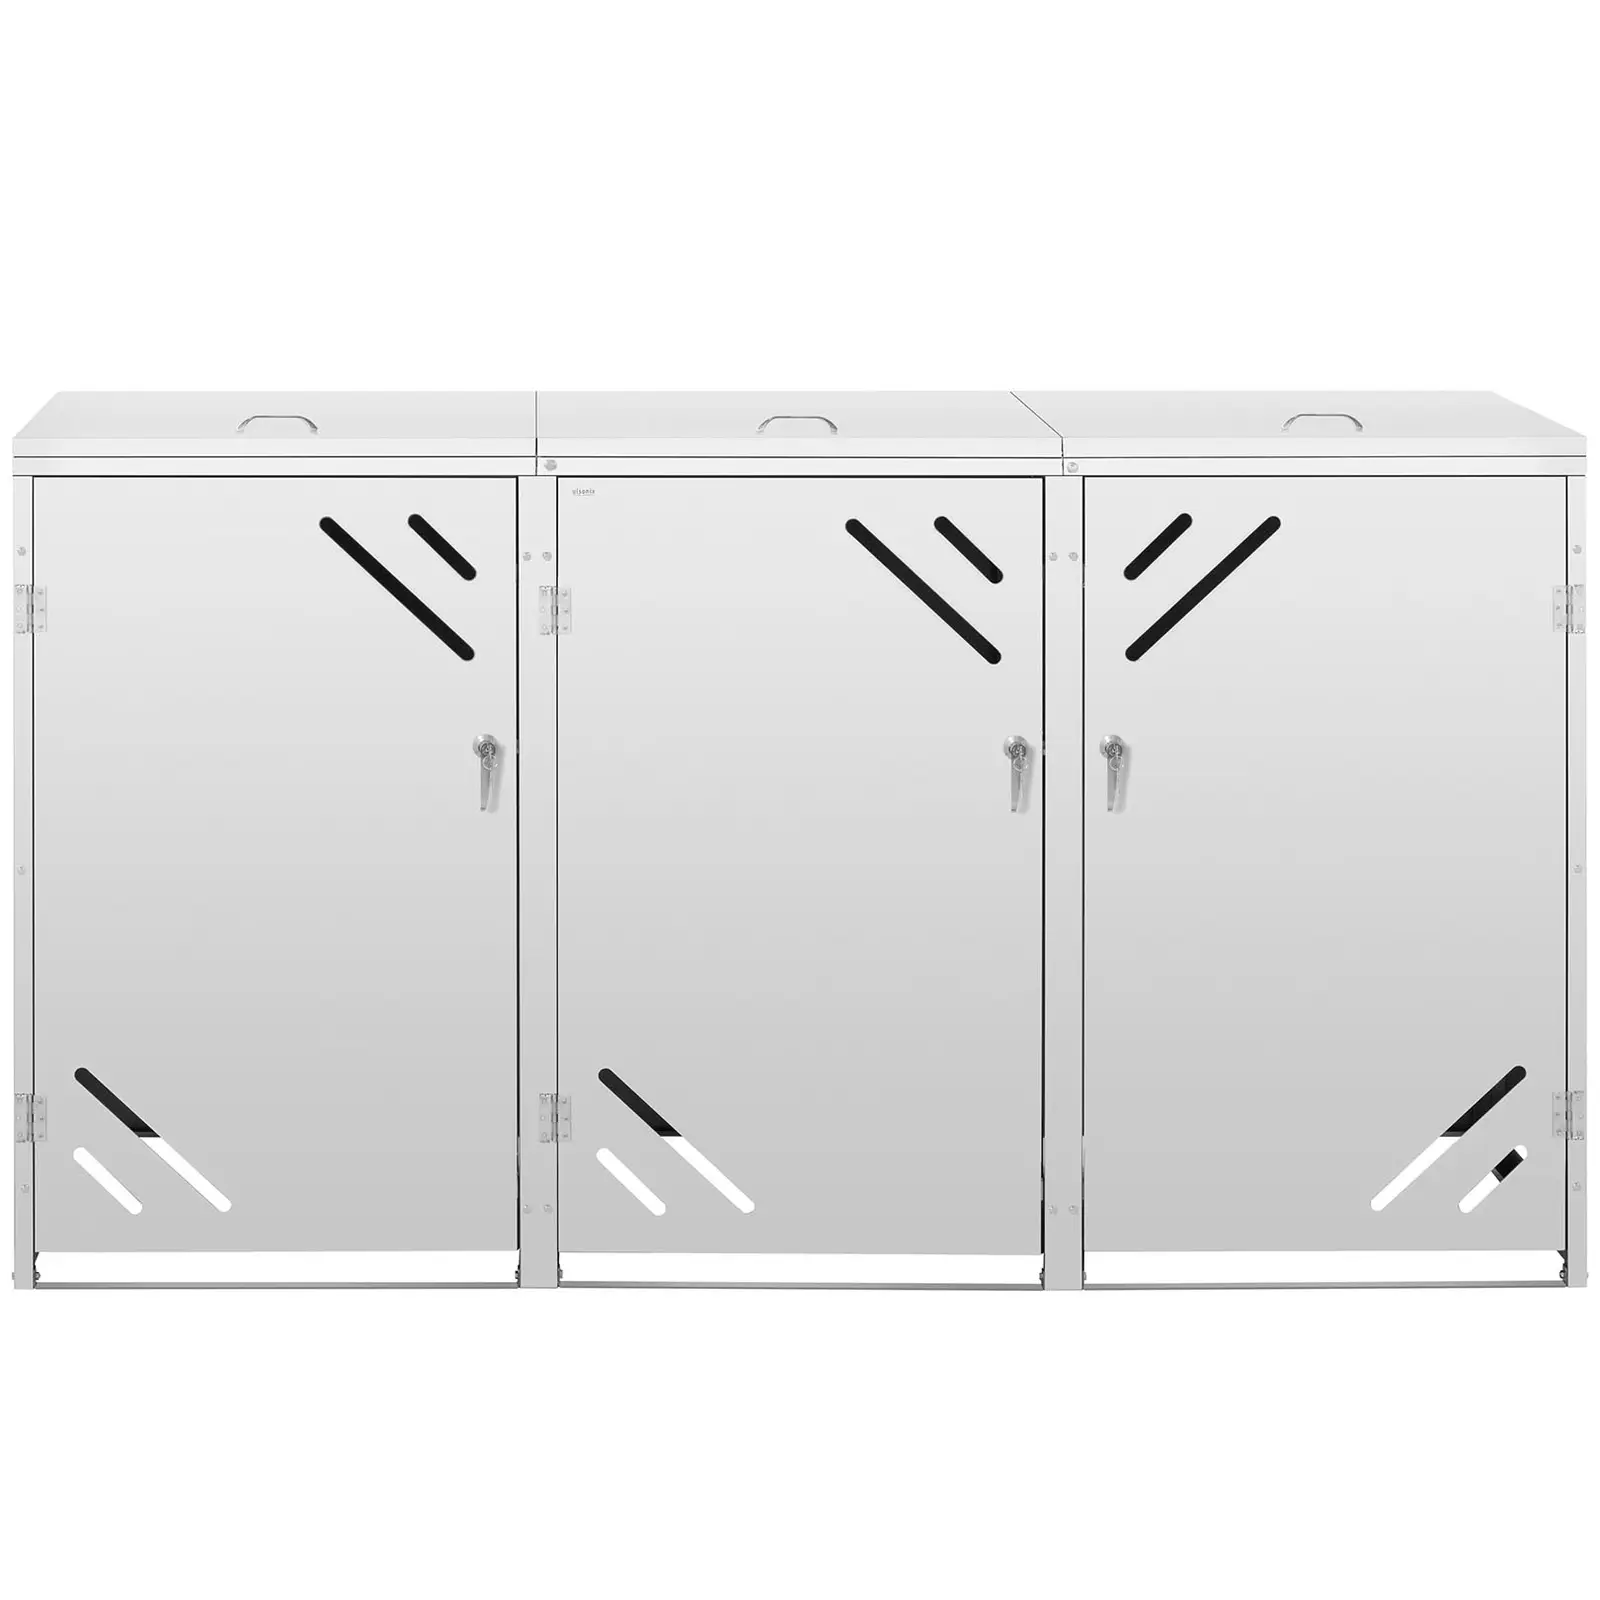 Mueble para cubos de basura - 3 x 240 L - ranuras de ventilación diagonales